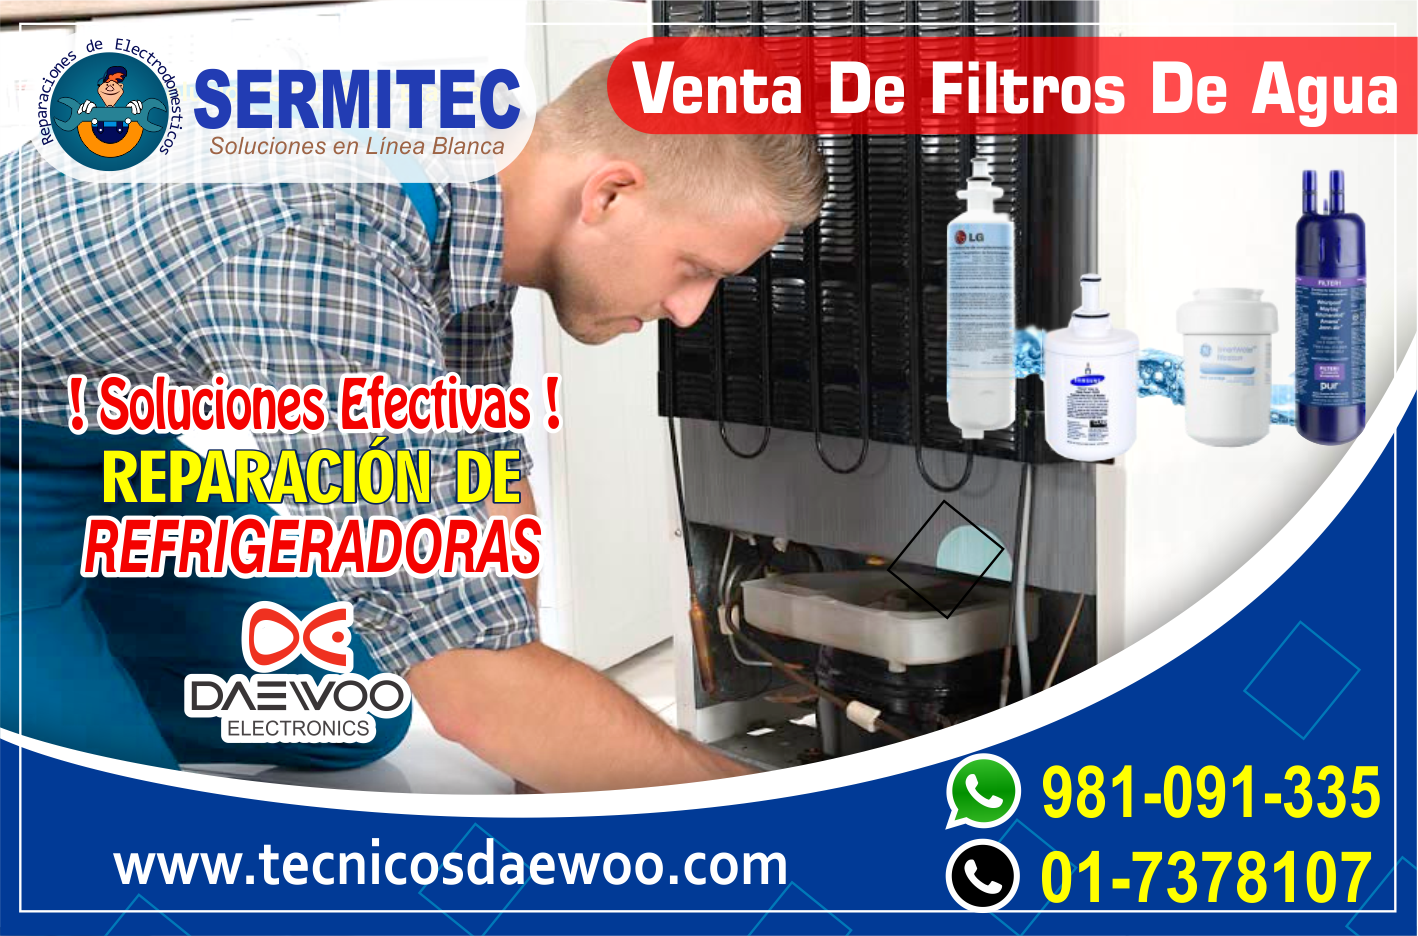 Servicio a Domicilio Reparacion refrigeradoras DAEWOO 017378107 CIENEGUILLA